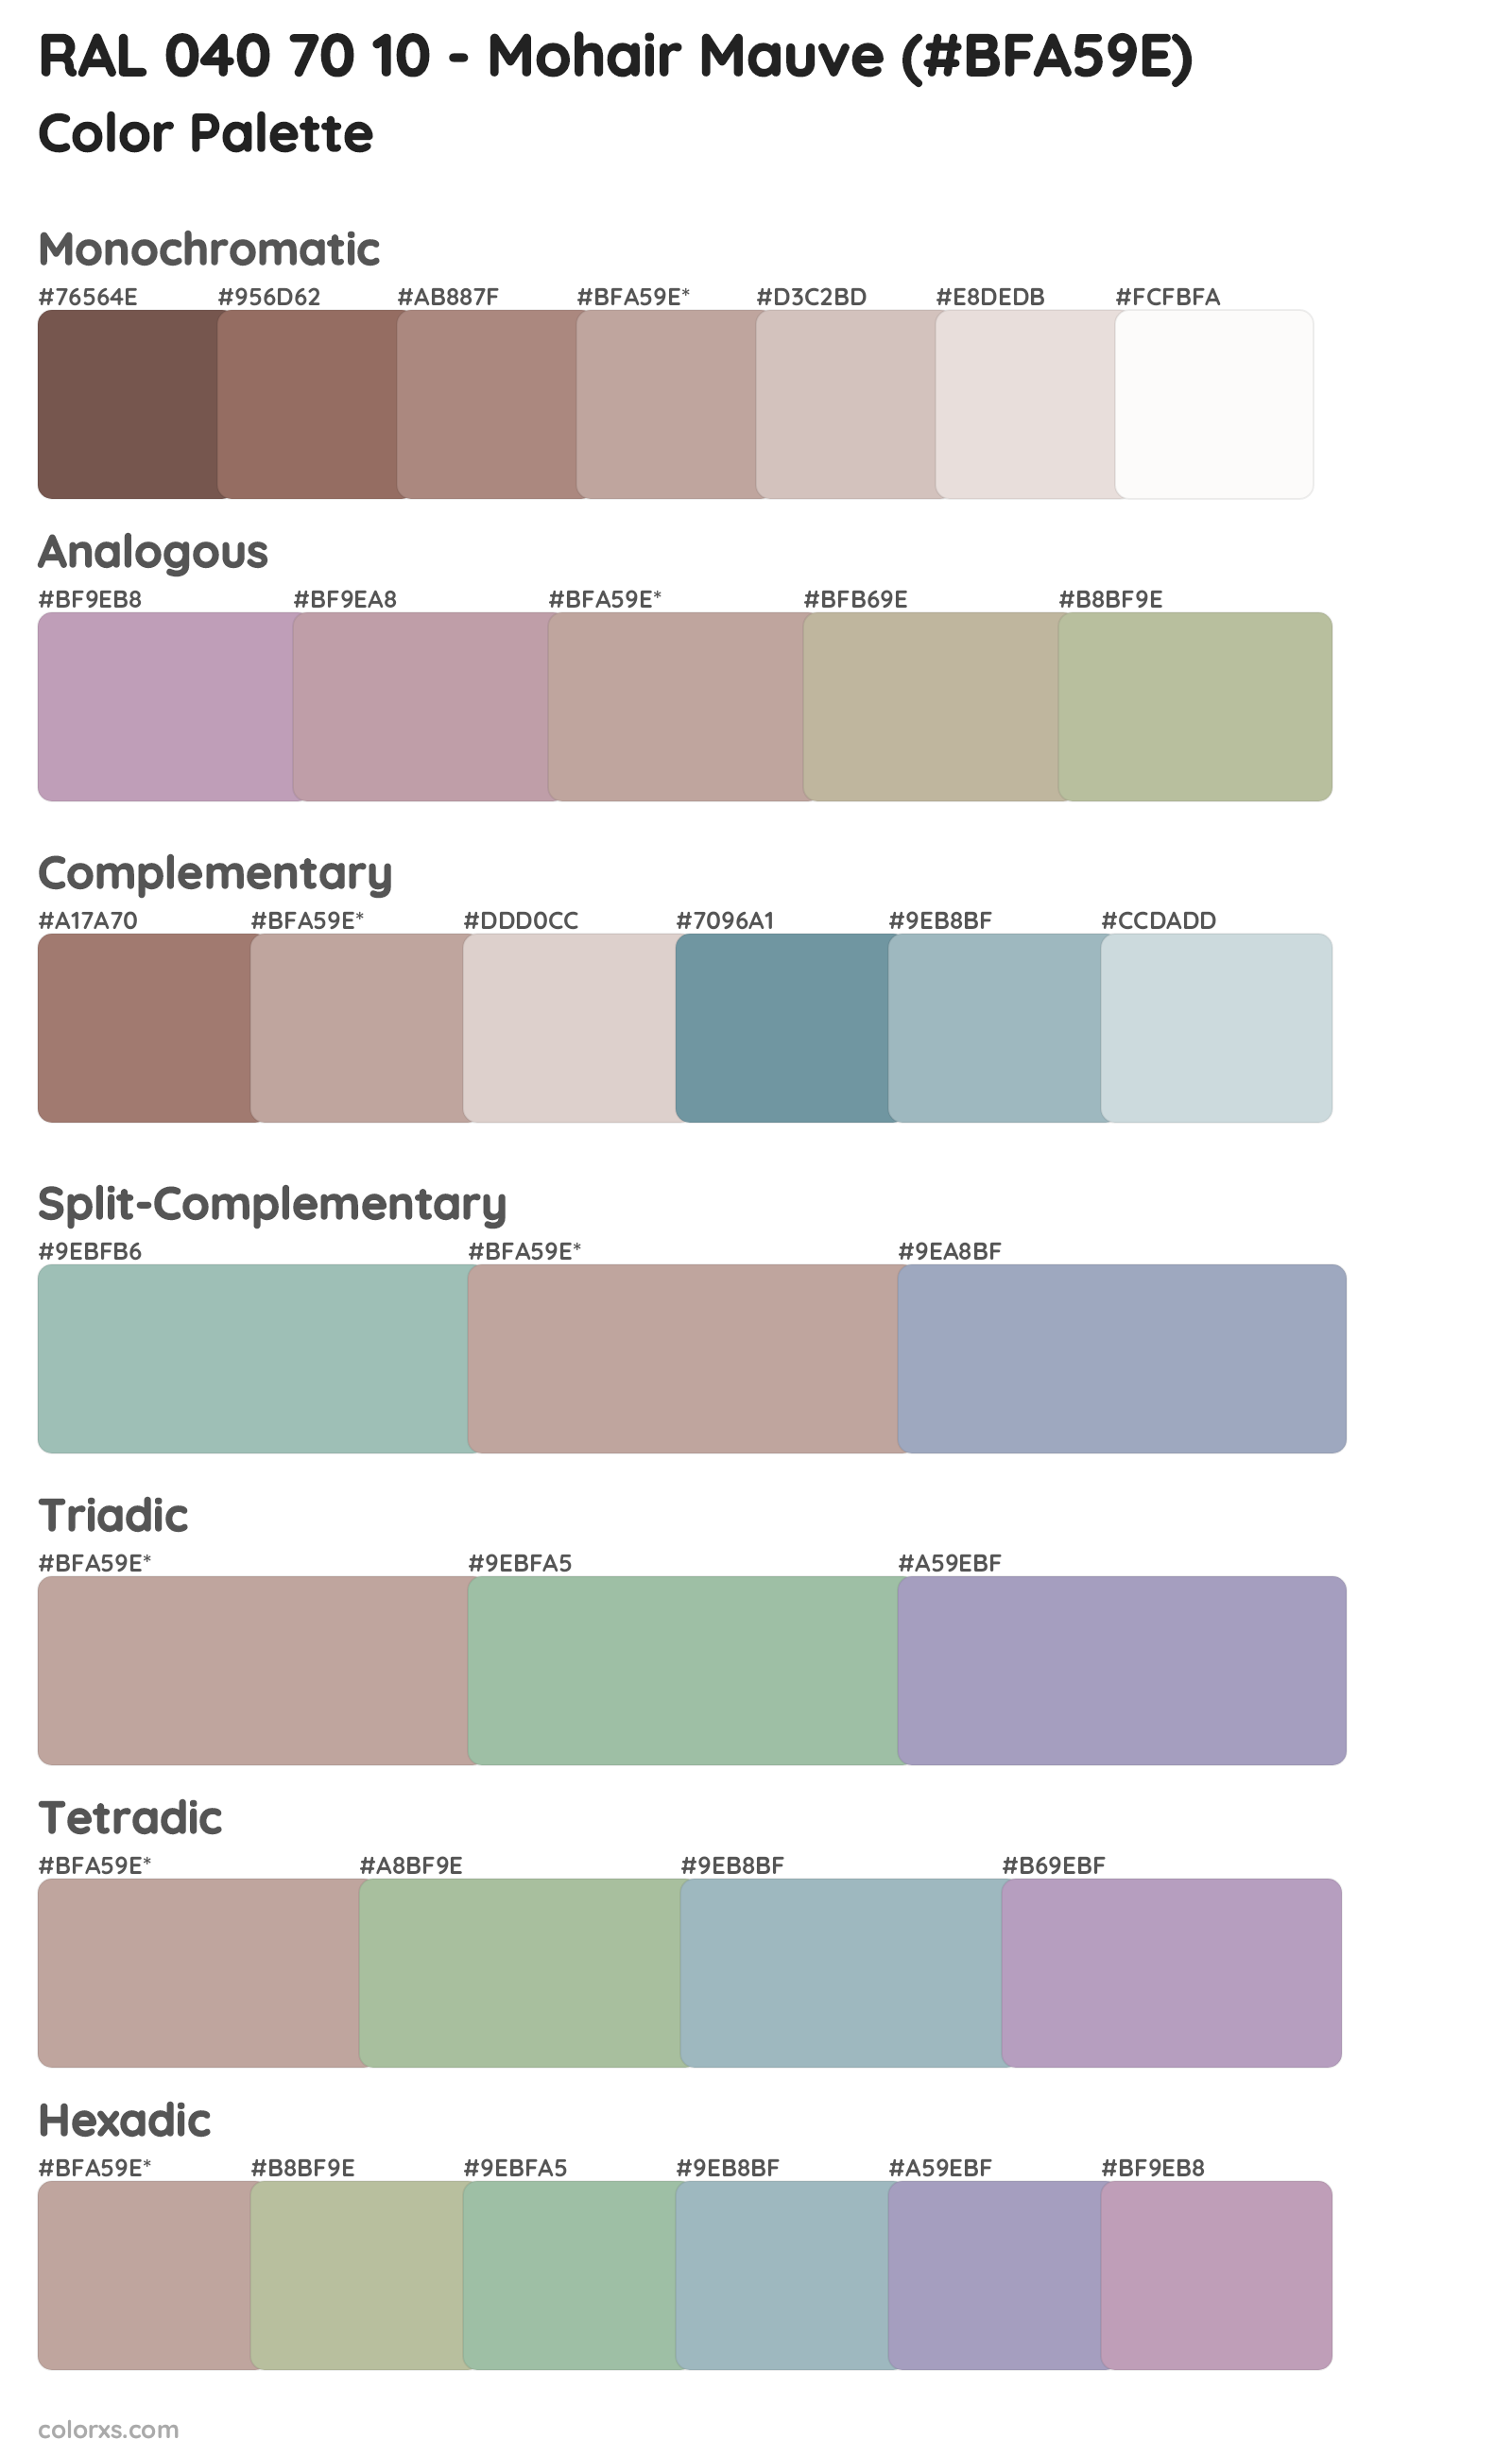 RAL 040 70 10 - Mohair Mauve Color Scheme Palettes